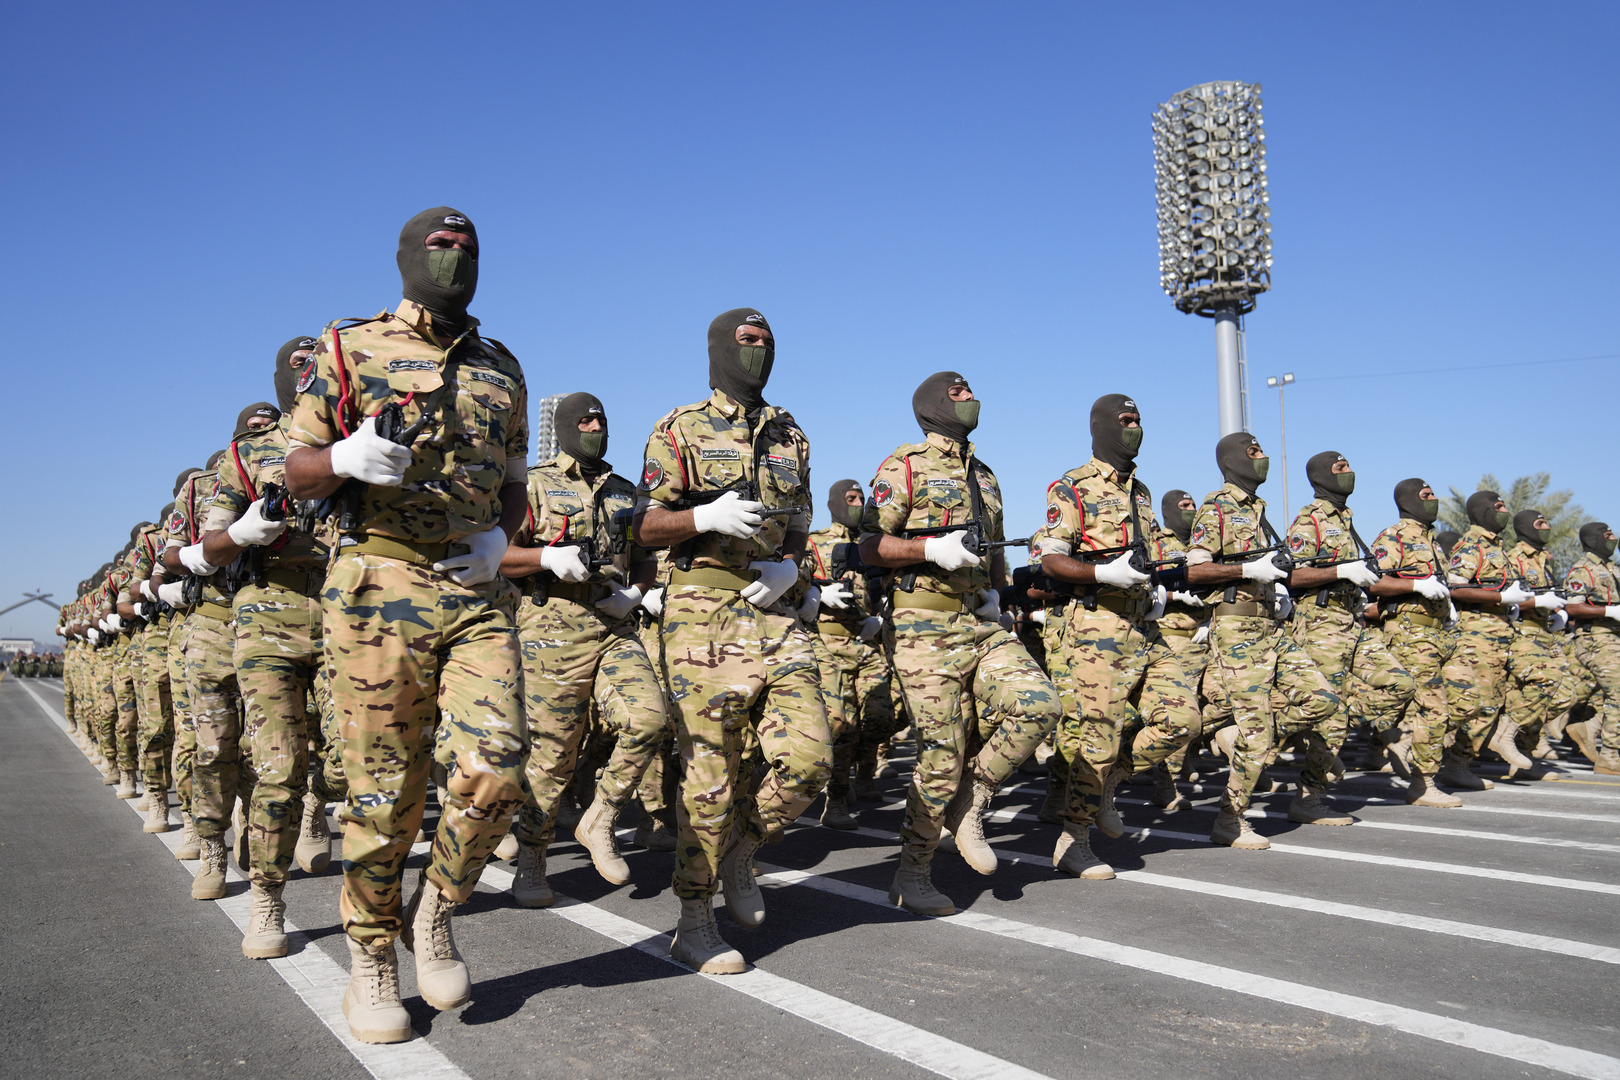 العراق.. ضابط في الجيش يصفع آخر أعلى رتبة منه ووزارة الدفاع تصدر بيانا ( فيديو)